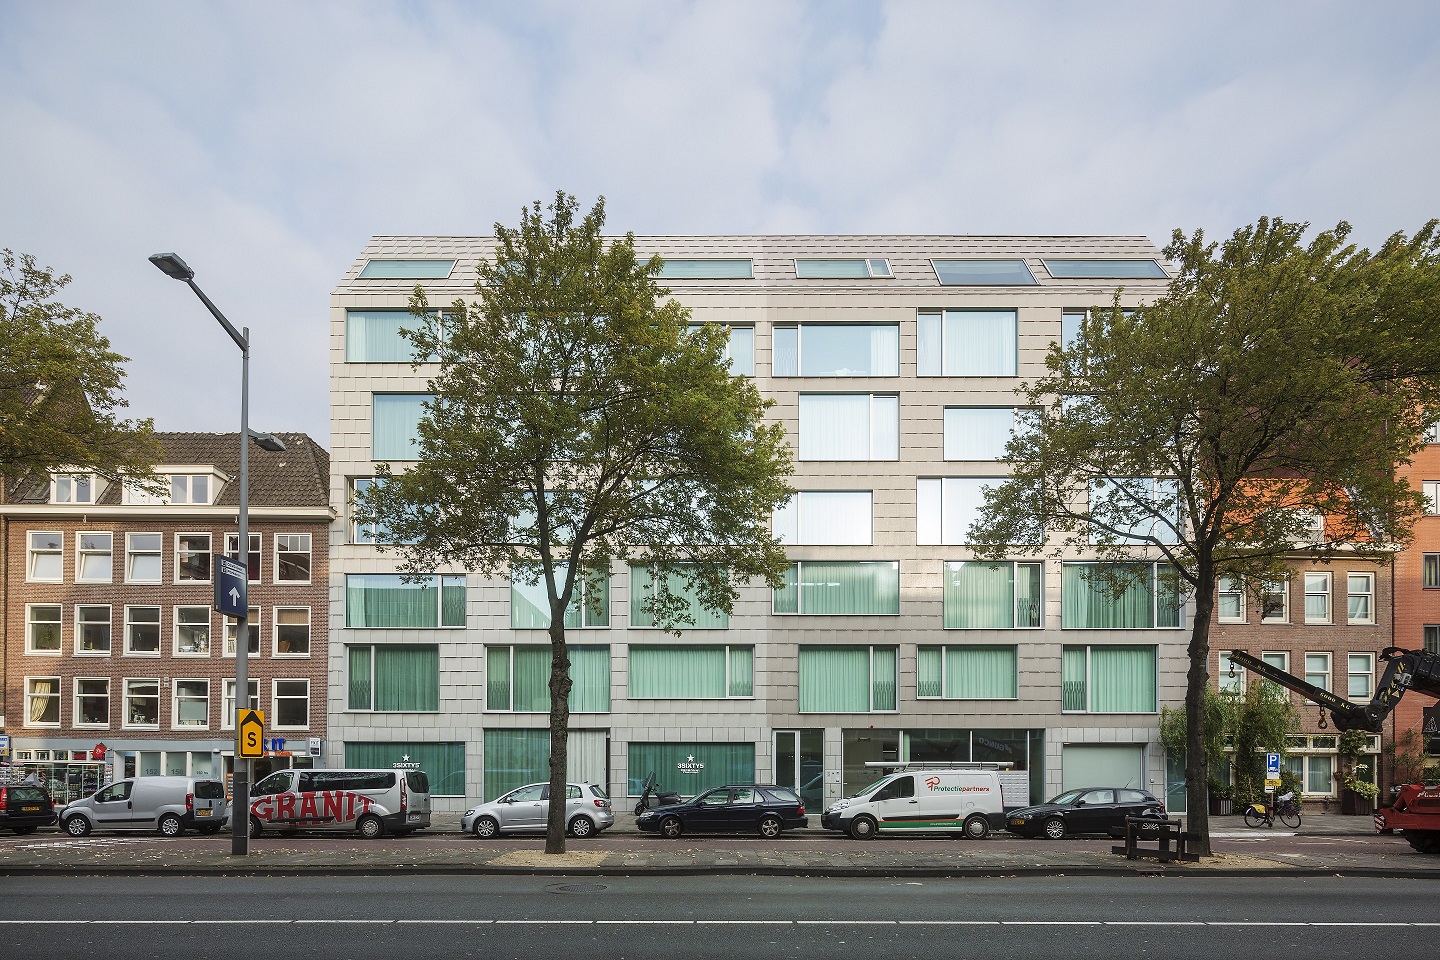 Op een unieke binnenstedelijke locatie in Amsterdam, ingeklemd tussen de Valkenburgerstraat, de Uilenburgergracht en twee belendende panden, is het project ‘The Double’ gerealiseerd.